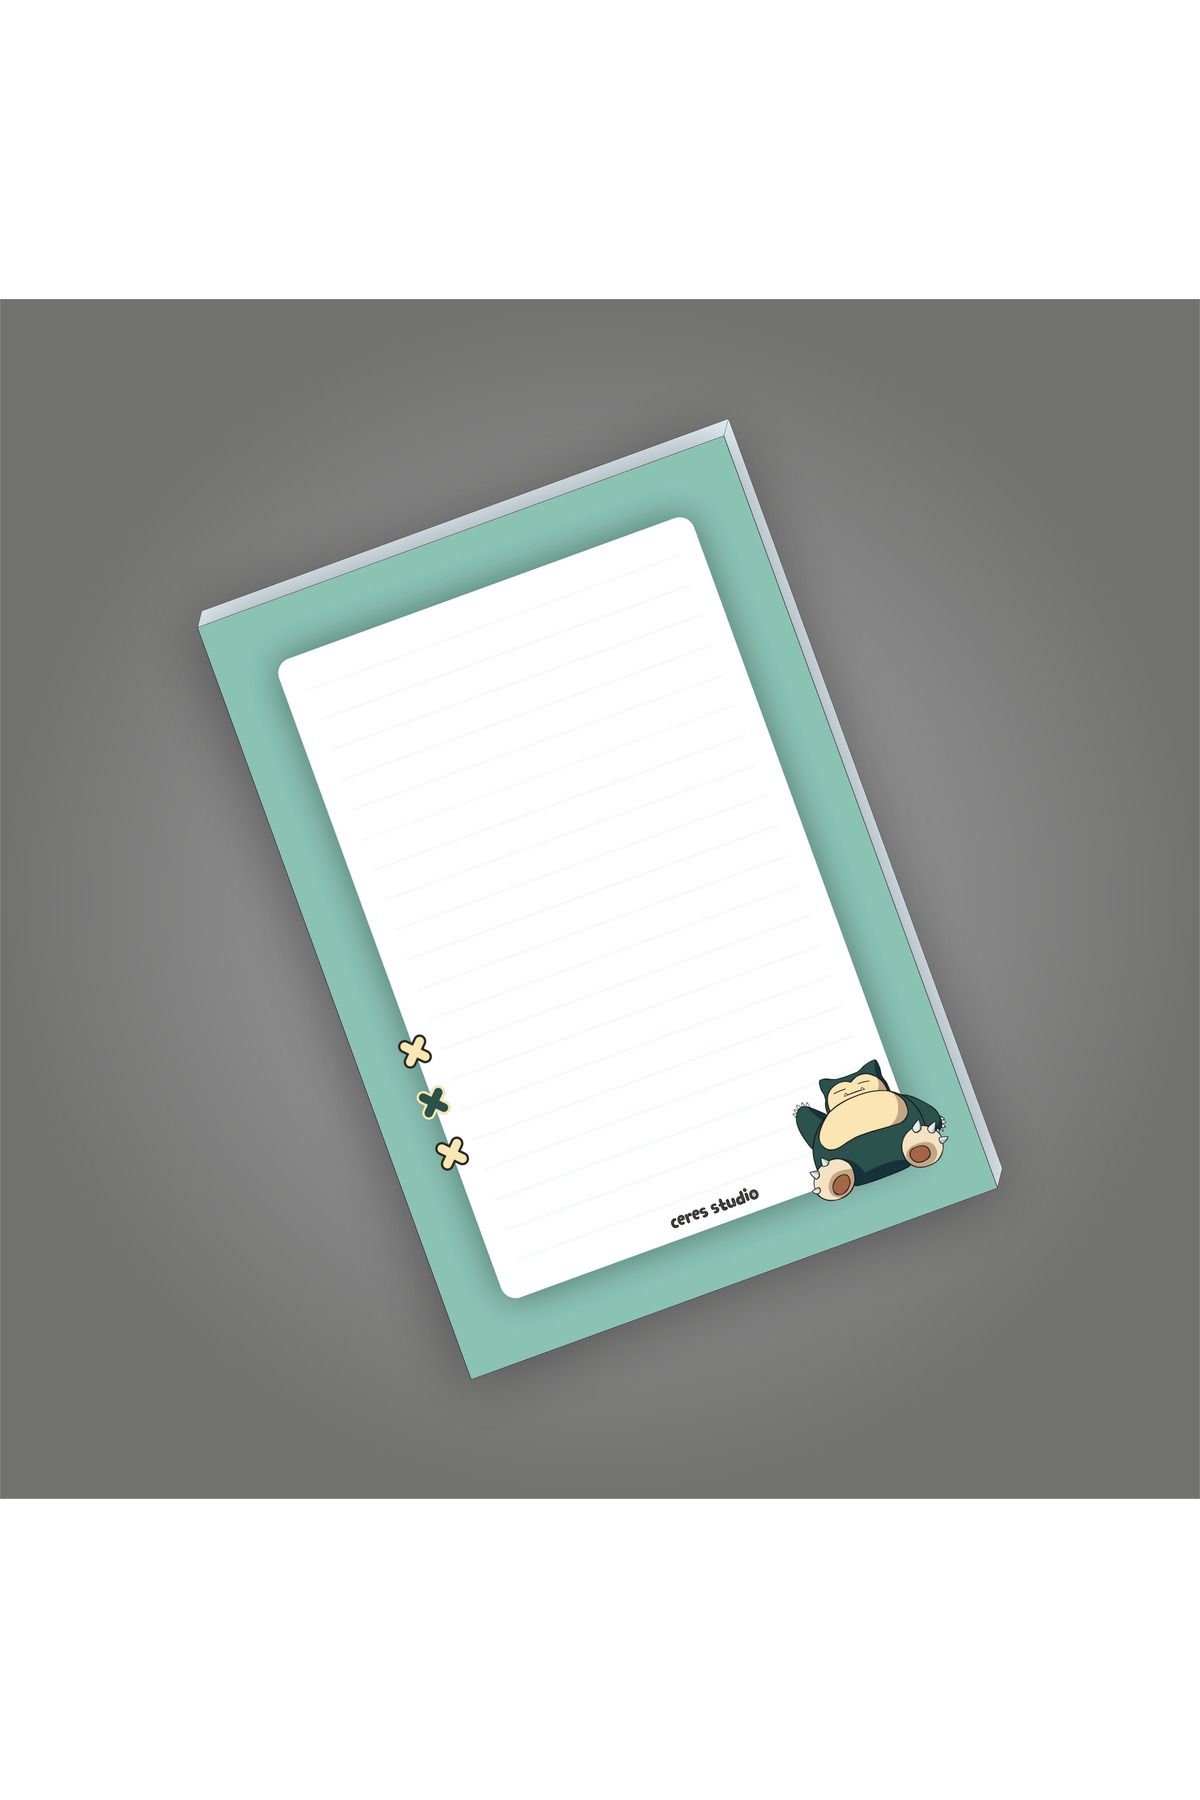 Ceres Studio Pokemon Not Defterleri | Notepad | Bloknot | A5 (14x20cm) 40 Sayfa Not Defteri